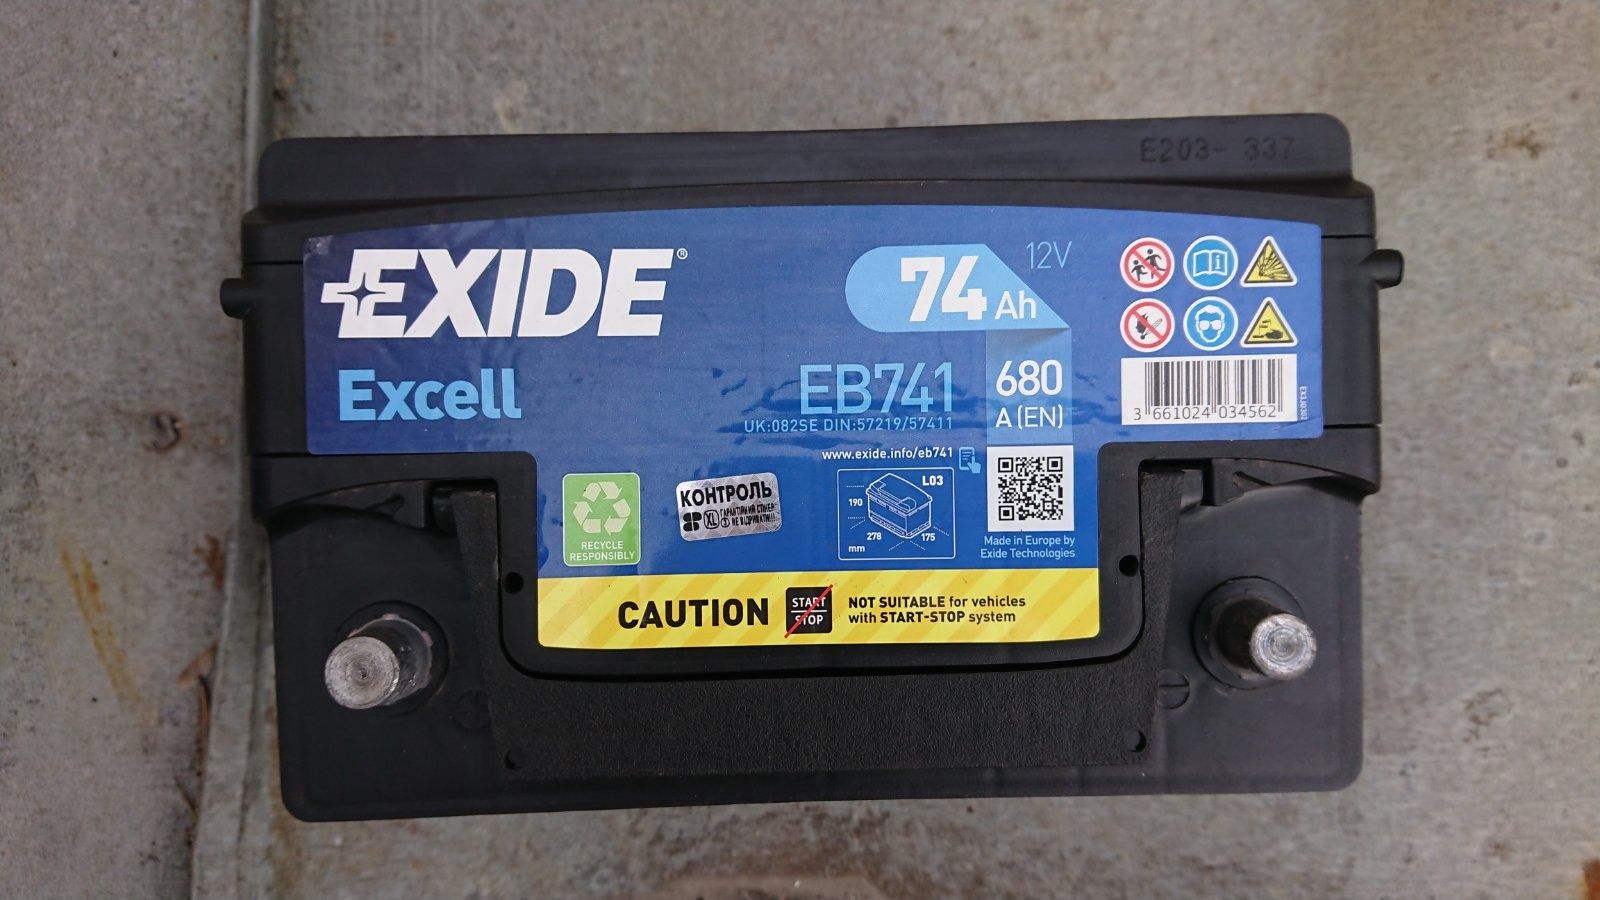 Exide Excell 74Ah 680A 12V EB741